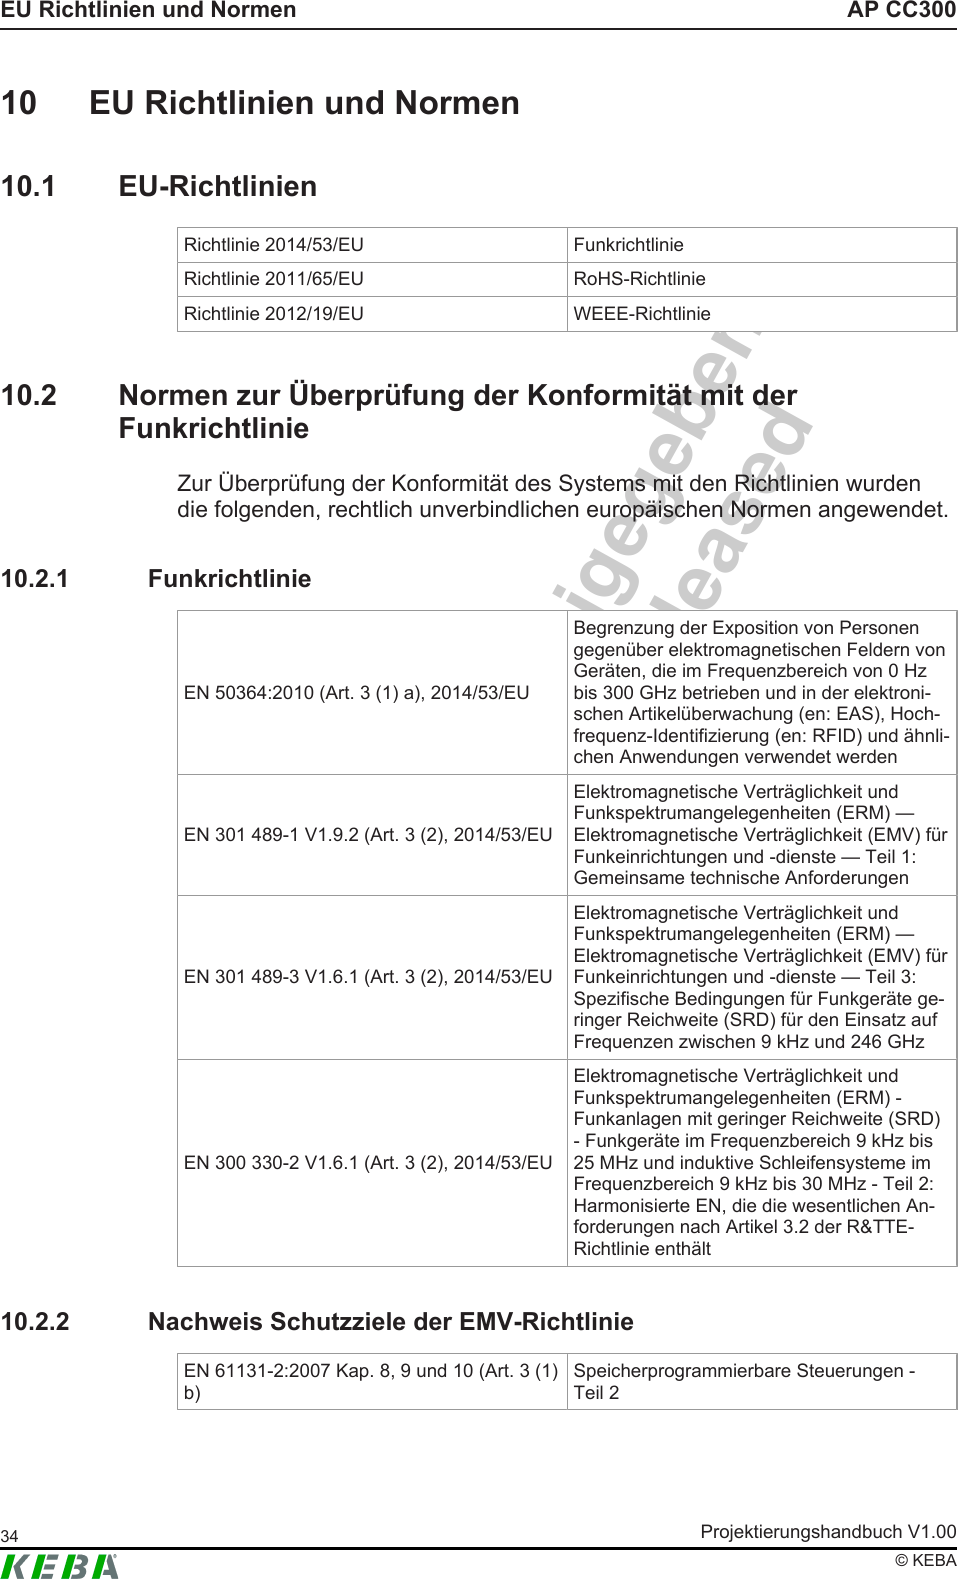 Intern - nicht freigegebenInternal - not releasedAP CC300EU Richtlinien und NormenProjektierungshandbuch V1.0034© KEBA10 EU Richtlinien und Normen10.1 EU-RichtlinienRichtlinie 2014/53/EU FunkrichtlinieRichtlinie 2011/65/EU RoHS-RichtlinieRichtlinie 2012/19/EU WEEE-Richtlinie10.2 Normen zur Überprüfung der Konformität mit derFunkrichtlinieZur Überprüfung der Konformität des Systems mit den Richtlinien wurdendie folgenden, rechtlich unverbindlichen europäischen Normen angewendet.10.2.1 FunkrichtlinieEN 50364:2010 (Art. 3 (1) a), 2014/53/EUBegrenzung der Exposition von Personengegenüber elektromagnetischen Feldern vonGeräten, die im Frequenzbereich von 0 Hzbis 300 GHz betrieben und in der elektroni-schen Artikelüberwachung (en: EAS), Hoch-frequenz-Identifizierung (en: RFID) und ähnli-chen Anwendungen verwendet werdenEN 301 489-1 V1.9.2 (Art. 3 (2), 2014/53/EUElektromagnetische Verträglichkeit undFunkspektrumangelegenheiten (ERM) —Elektromagnetische Verträglichkeit (EMV) fürFunkeinrichtungen und -dienste — Teil 1:Gemeinsame technische AnforderungenEN 301 489-3 V1.6.1 (Art. 3 (2), 2014/53/EUElektromagnetische Verträglichkeit undFunkspektrumangelegenheiten (ERM) —Elektromagnetische Verträglichkeit (EMV) fürFunkeinrichtungen und -dienste — Teil 3:Spezifische Bedingungen für Funkgeräte ge-ringer Reichweite (SRD) für den Einsatz aufFrequenzen zwischen 9 kHz und 246 GHzEN 300 330-2 V1.6.1 (Art. 3 (2), 2014/53/EUElektromagnetische Verträglichkeit undFunkspektrumangelegenheiten (ERM) -Funkanlagen mit geringer Reichweite (SRD)- Funkgeräte im Frequenzbereich 9 kHz bis25 MHz und induktive Schleifensysteme imFrequenzbereich 9 kHz bis 30 MHz - Teil 2:Harmonisierte EN, die die wesentlichen An-forderungen nach Artikel 3.2 der R&amp;TTE-Richtlinie enthält10.2.2 Nachweis Schutzziele der EMV-RichtlinieEN 61131-2:2007 Kap. 8, 9 und 10 (Art. 3 (1)b)Speicherprogrammierbare Steuerungen -Teil 2